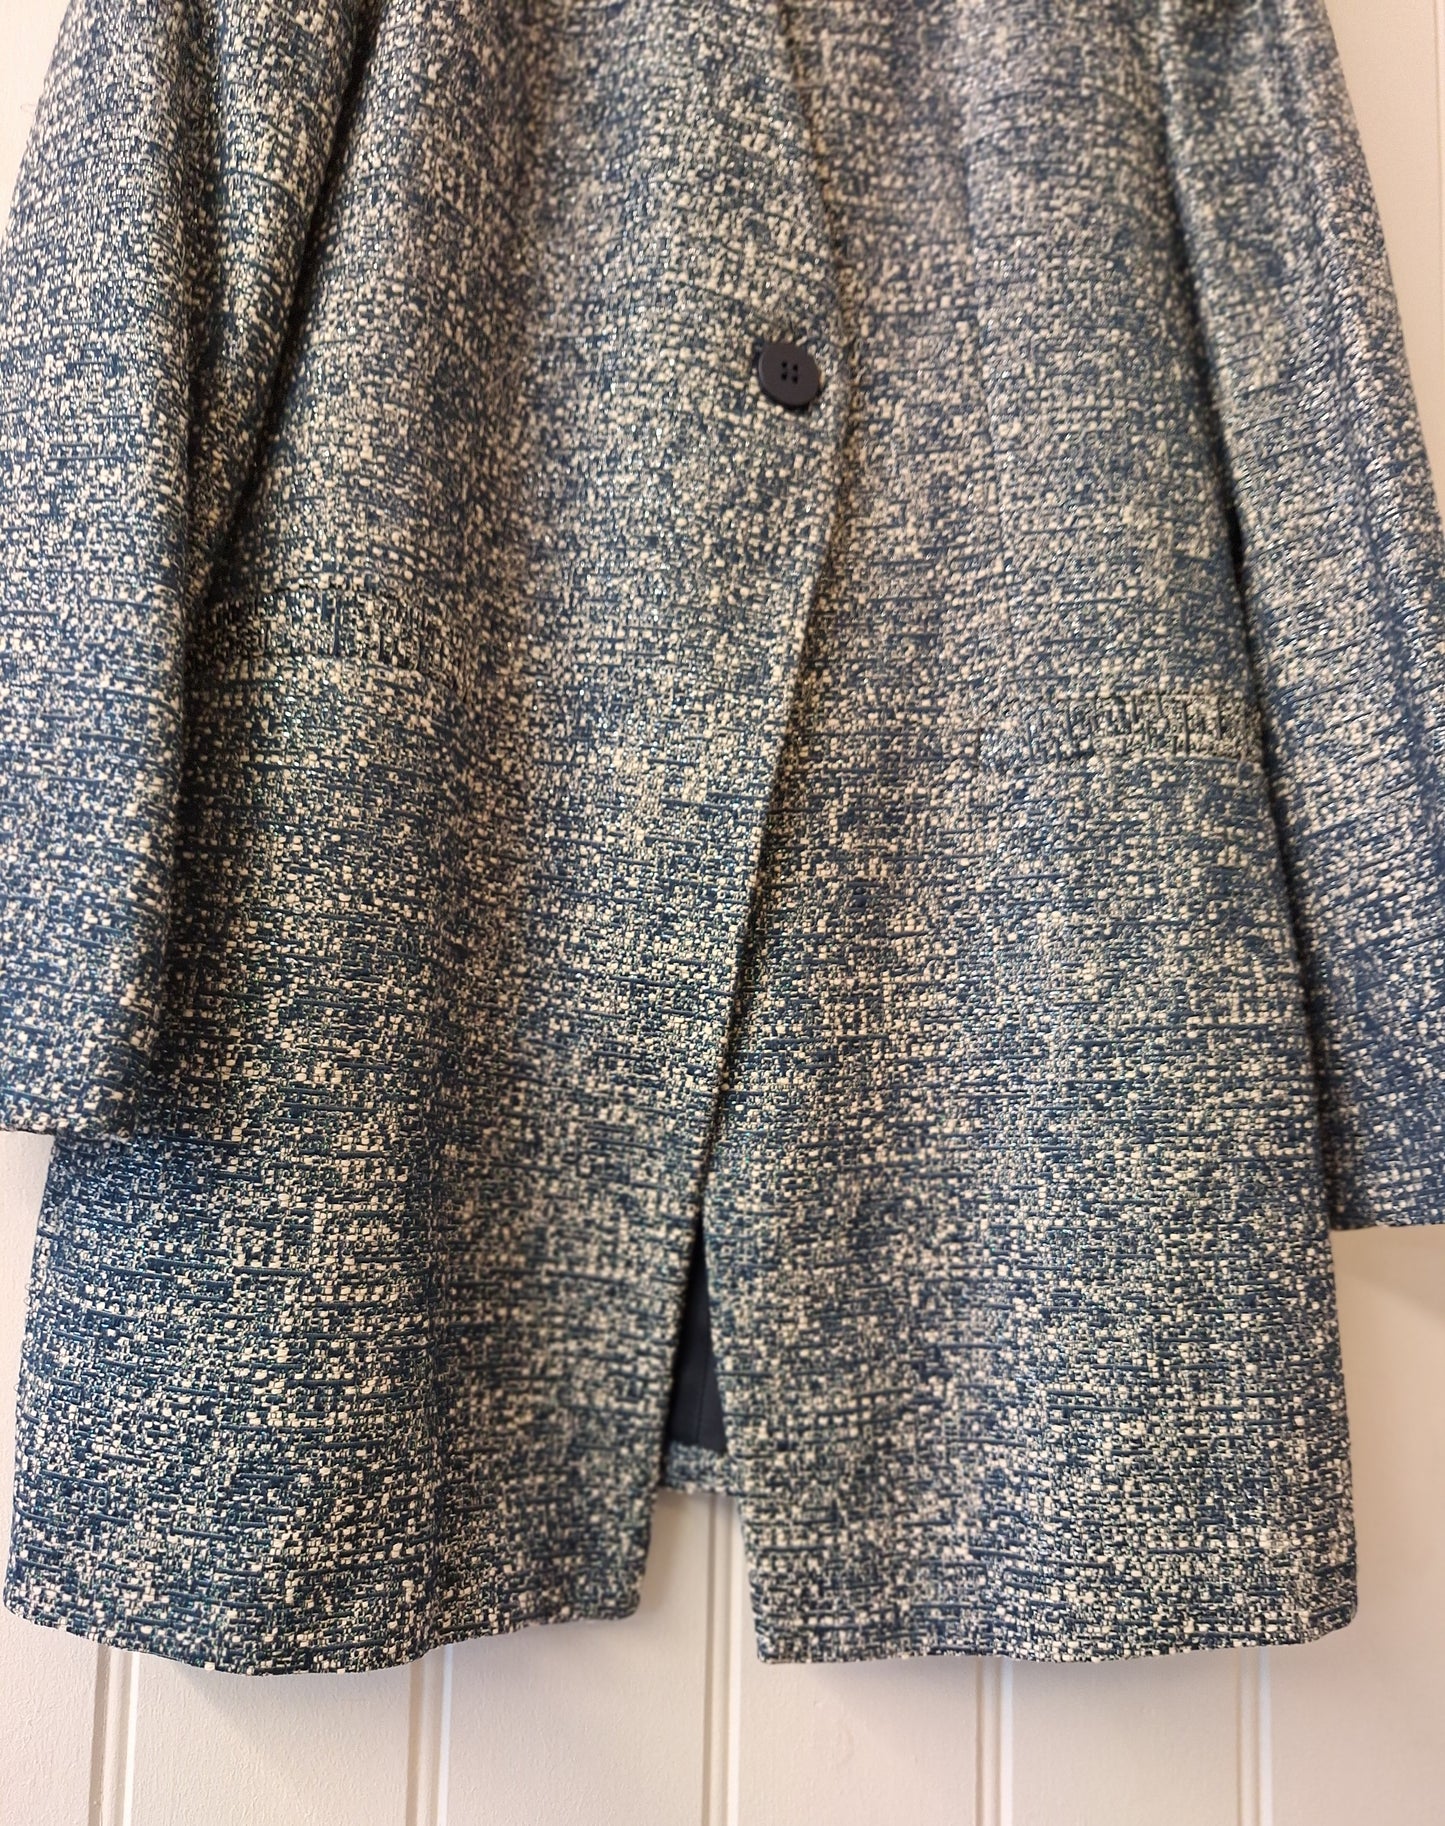 ZARA blue print coat XL